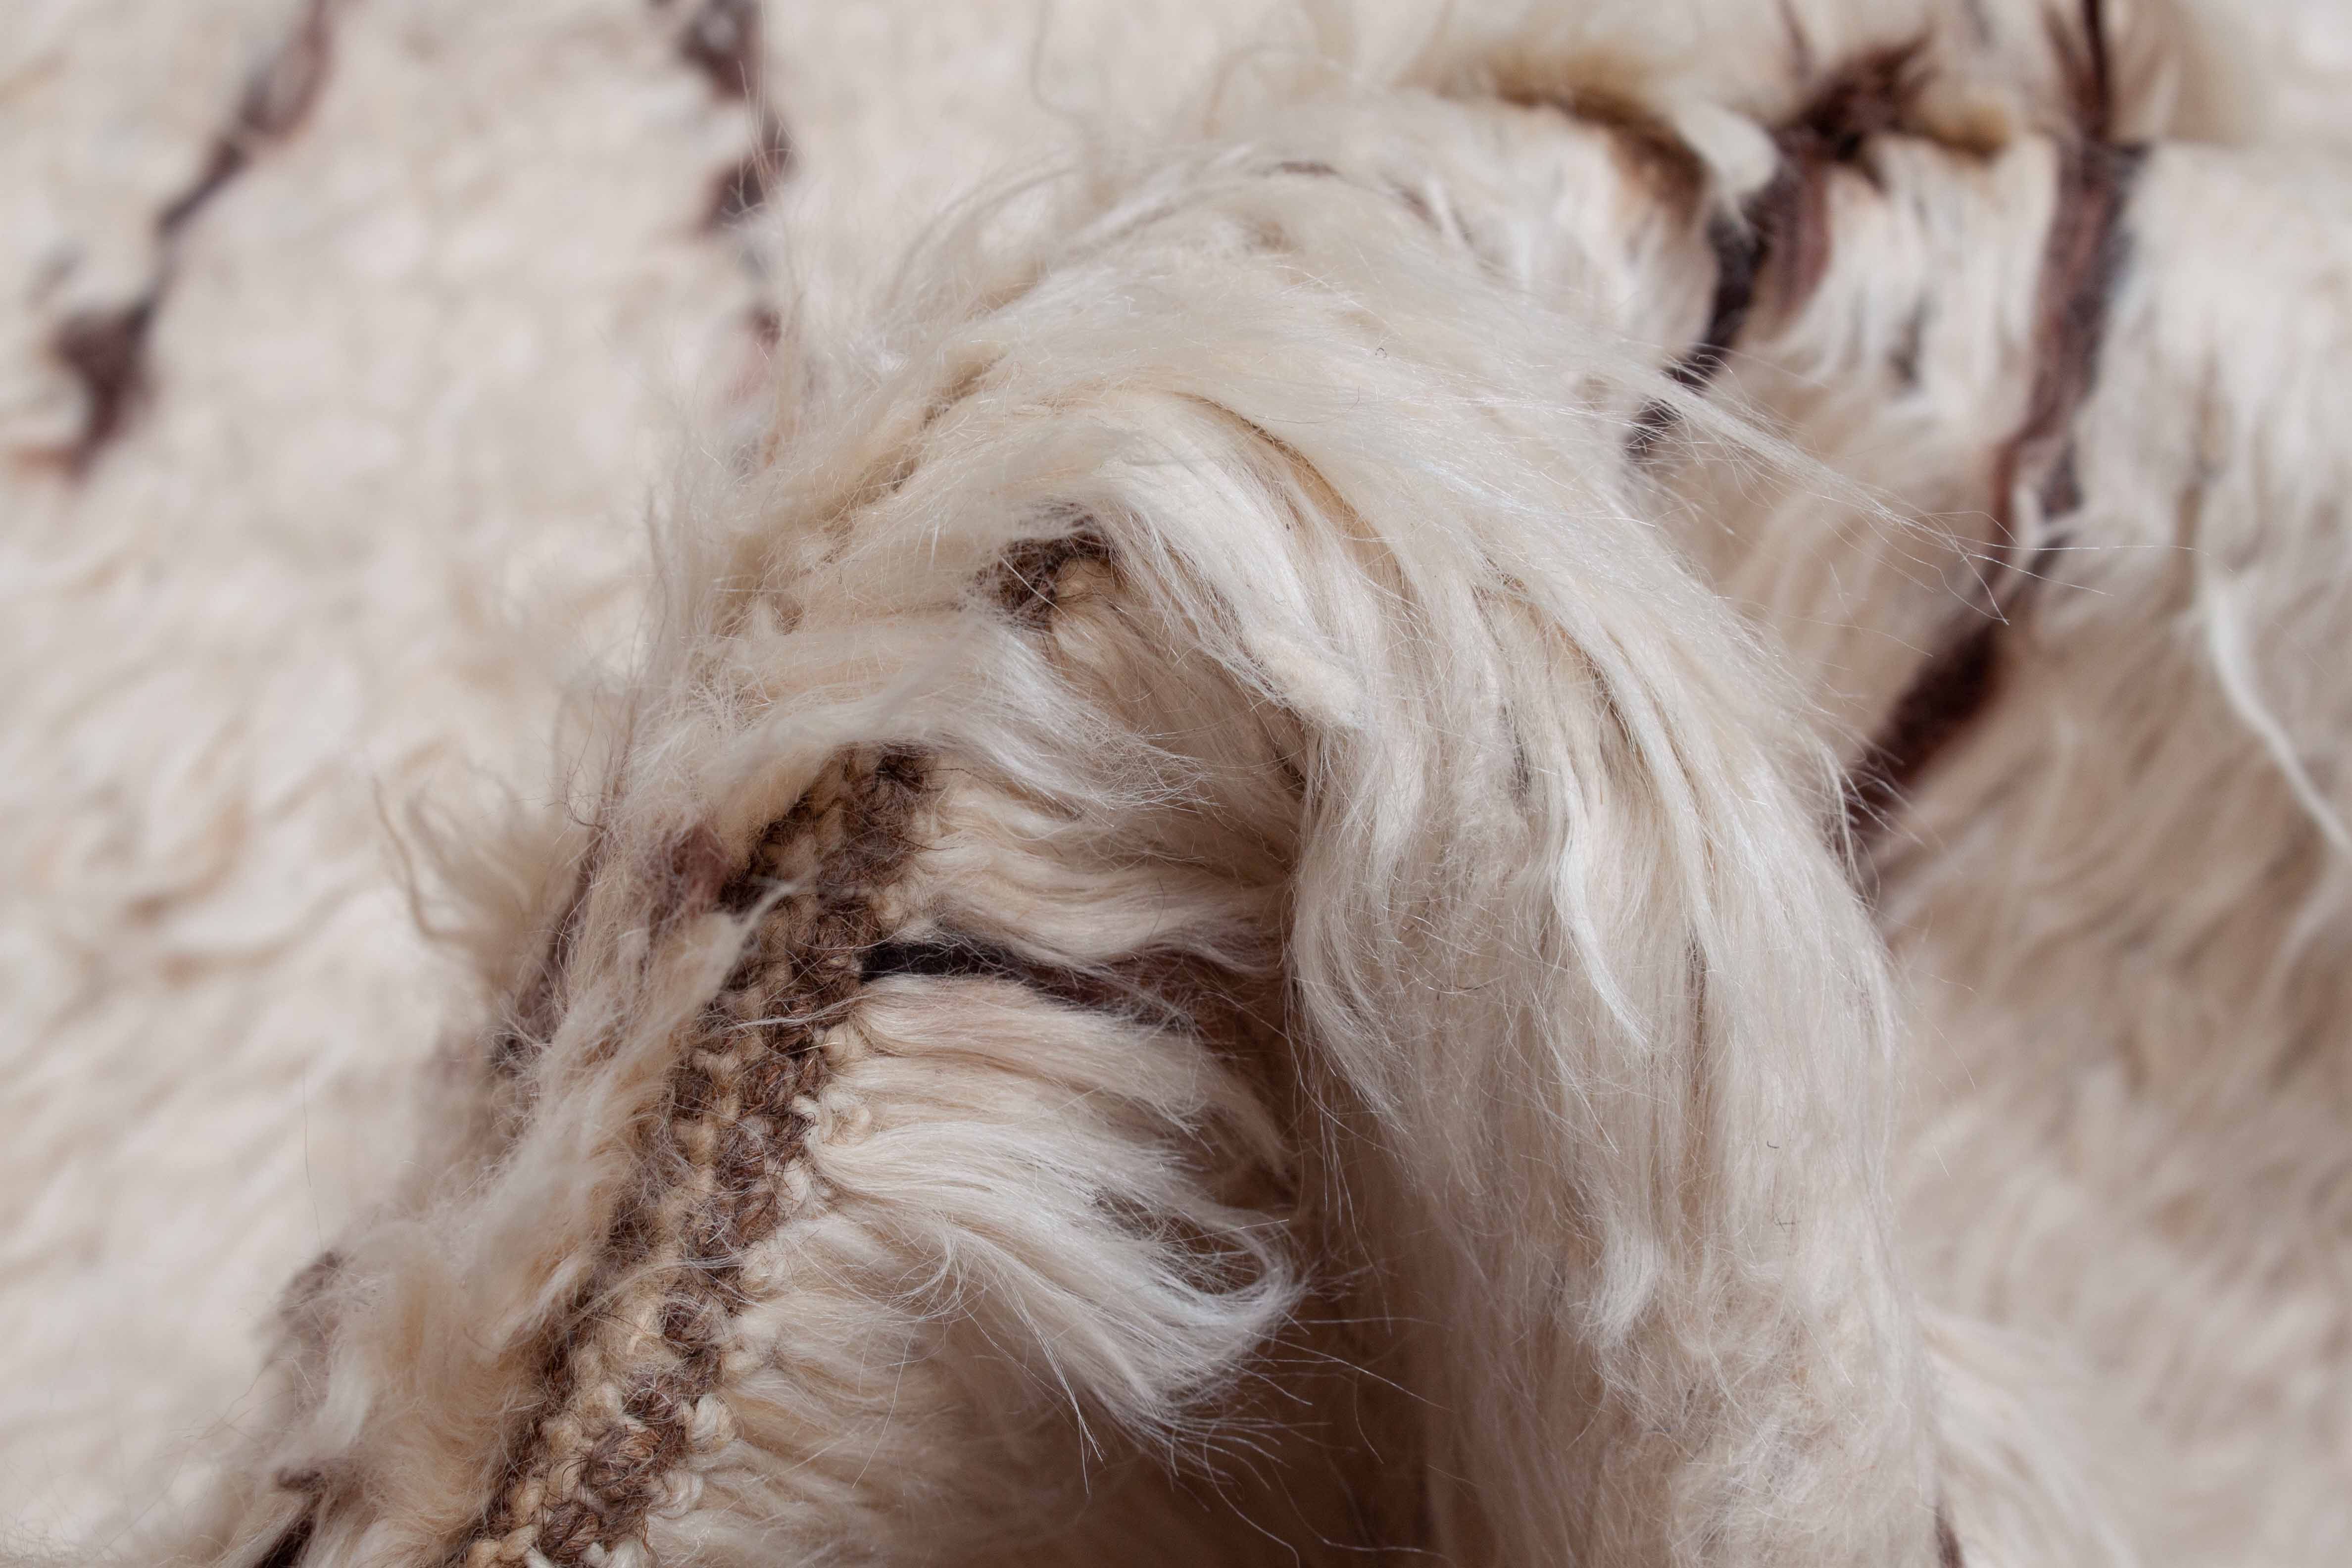 Eine Fotoaufnahme eines Furry Berber Teppichs.